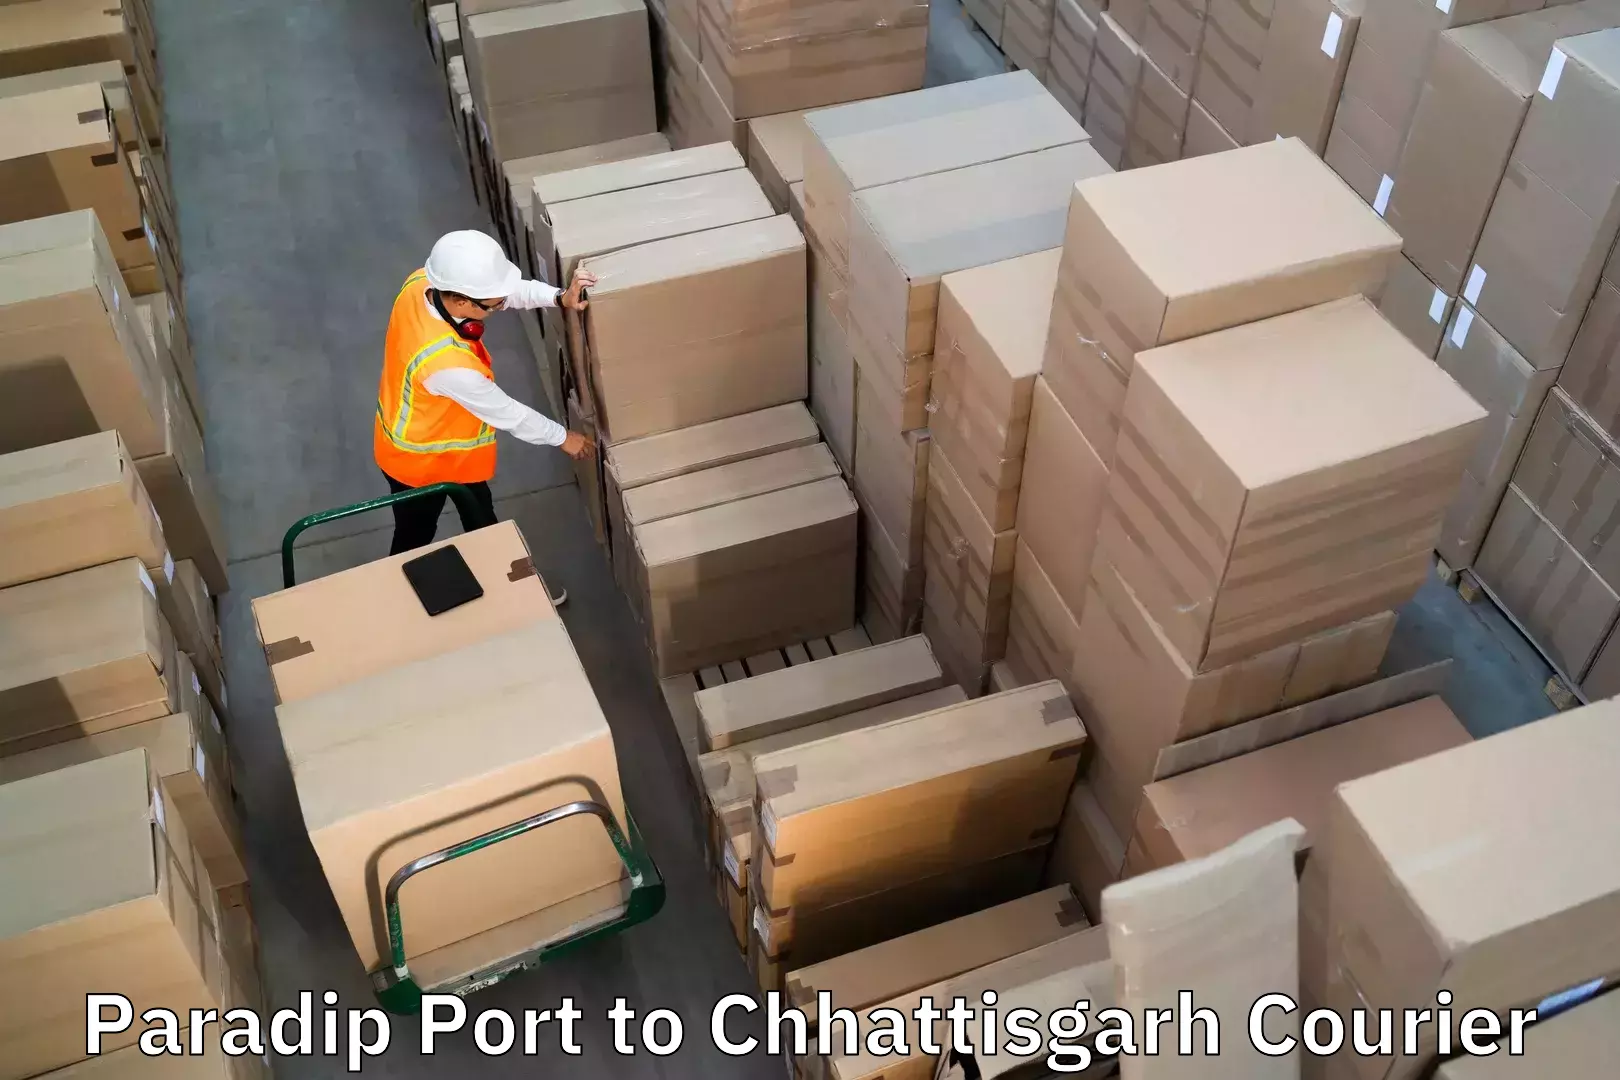 Luggage transport service Paradip Port to Saraipali